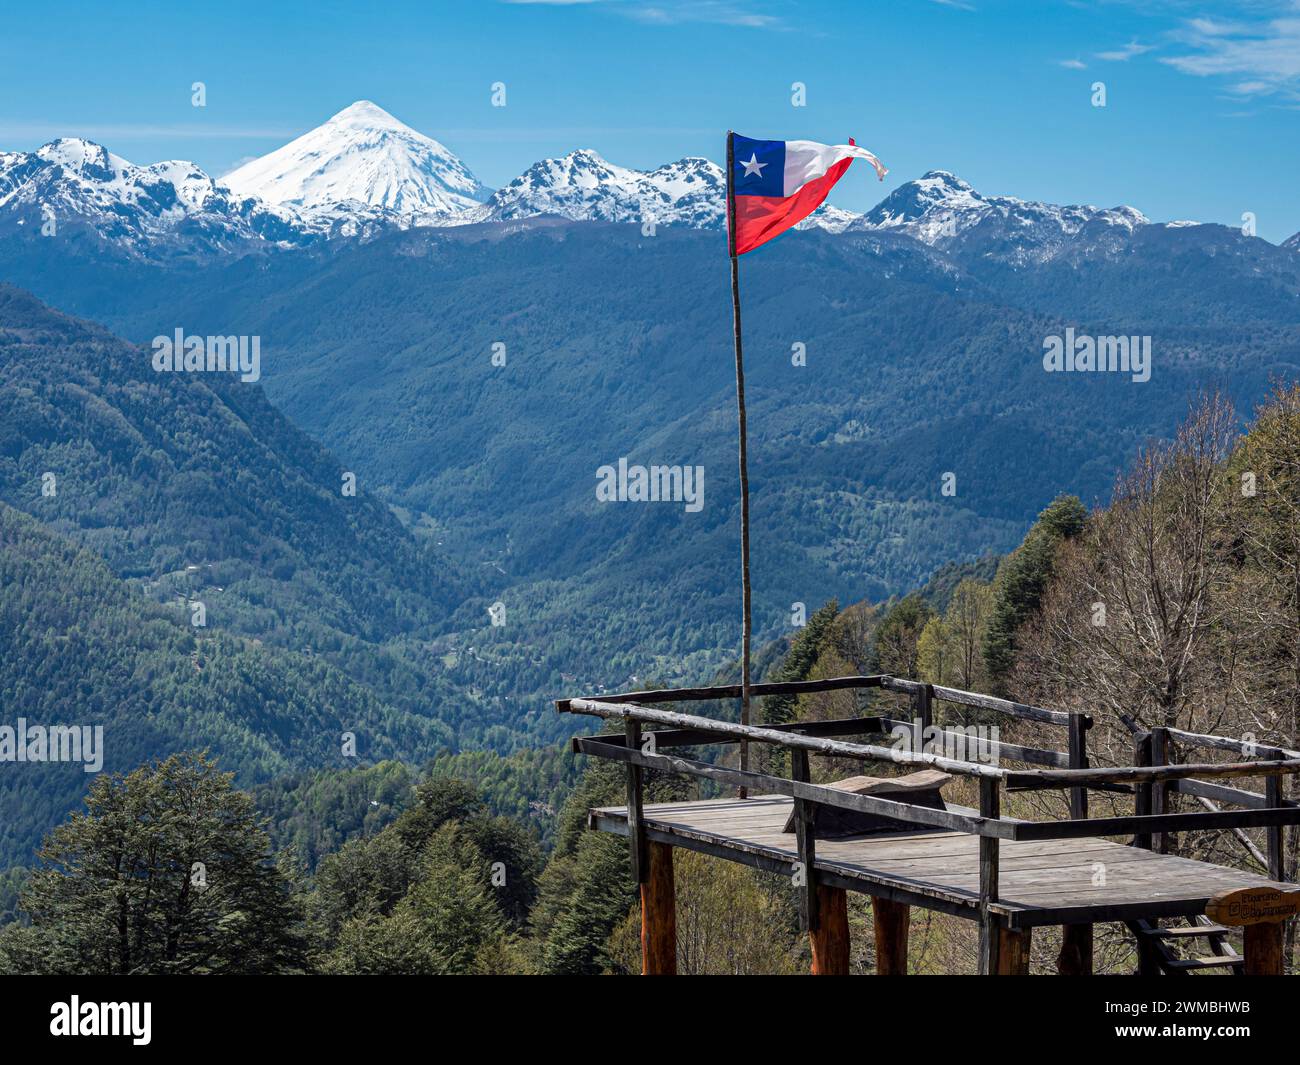 Point de vue au sentier menant au lac en forme de cœur Laguna Corazon, drapeau chilien, près de Liquine, Chili Banque D'Images